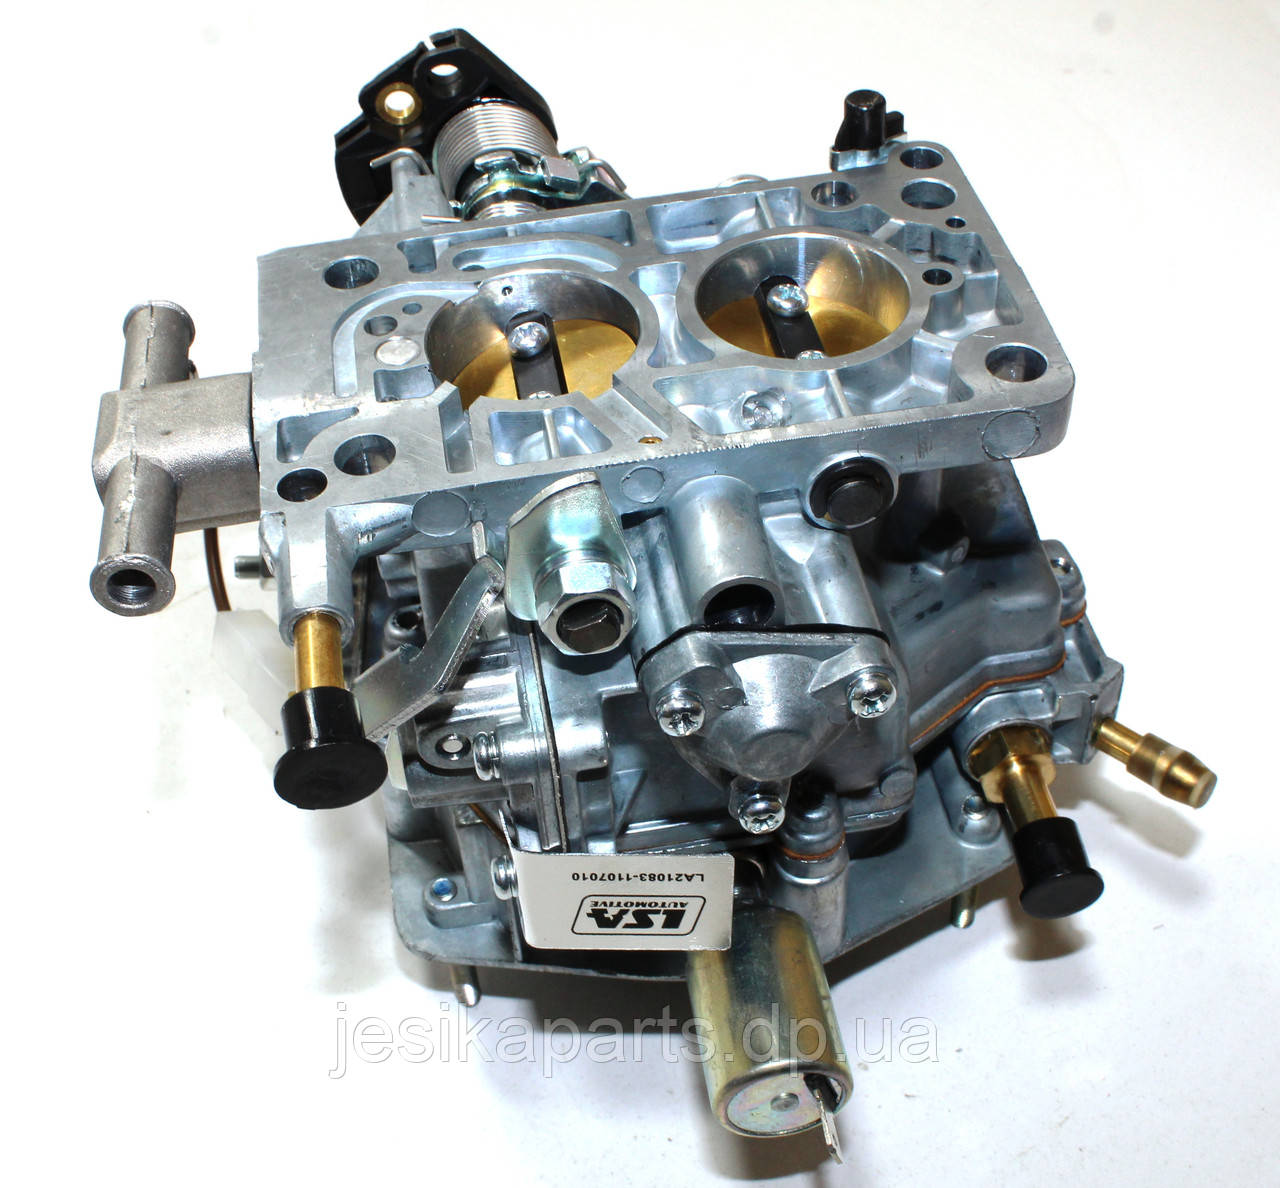 Двигатель ВАЗ-21083 1.5 8кл (в сборе)